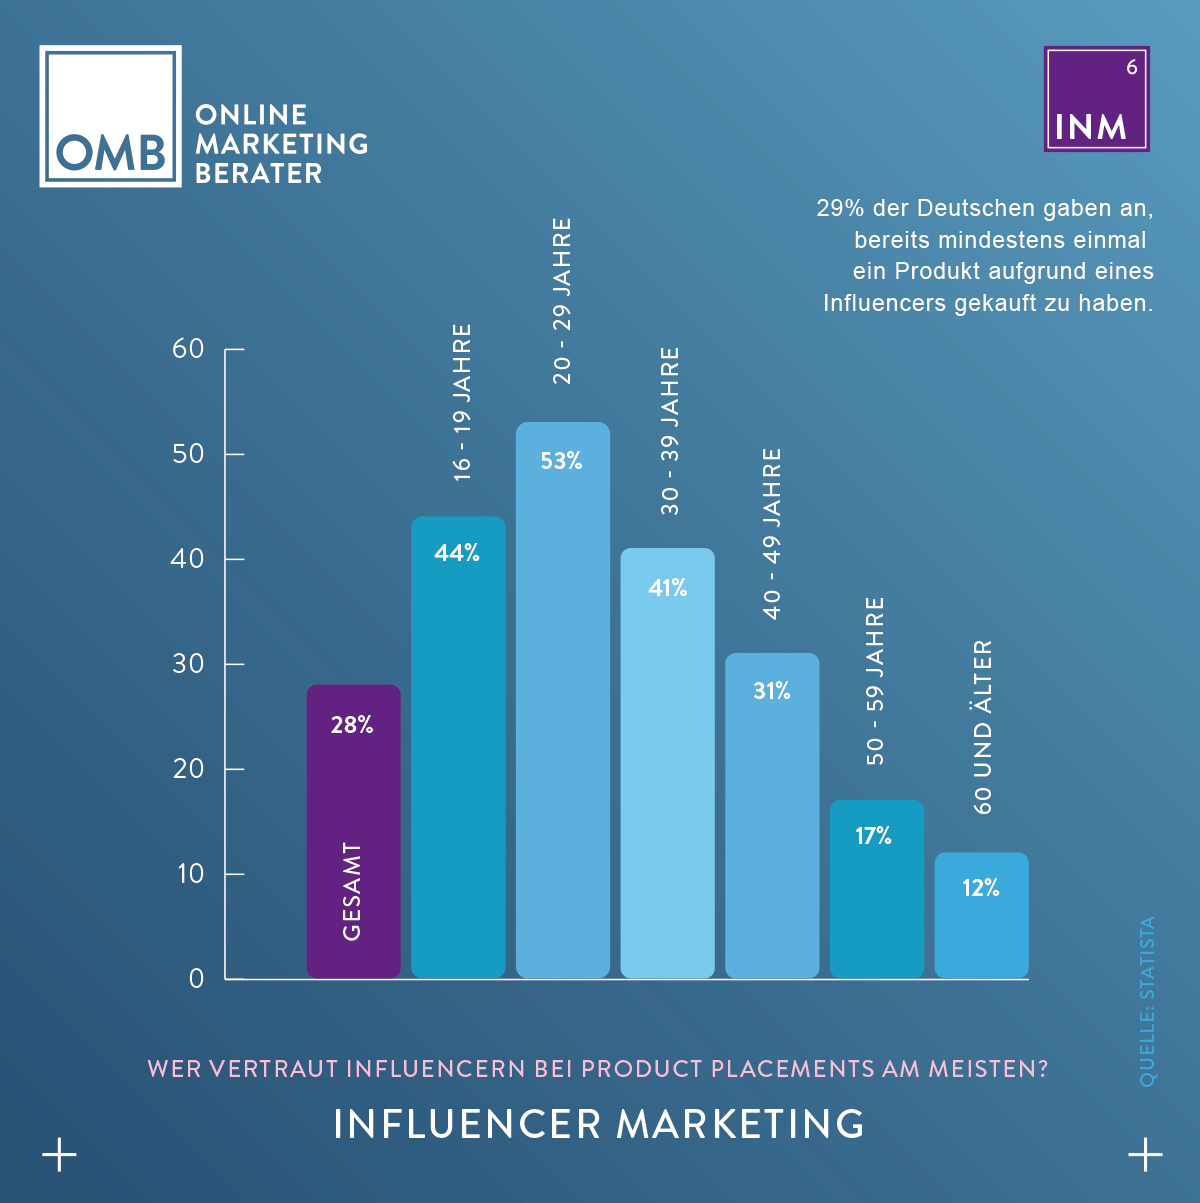 Influencer Marketing - Empfehlungsmarketing durch Influencer